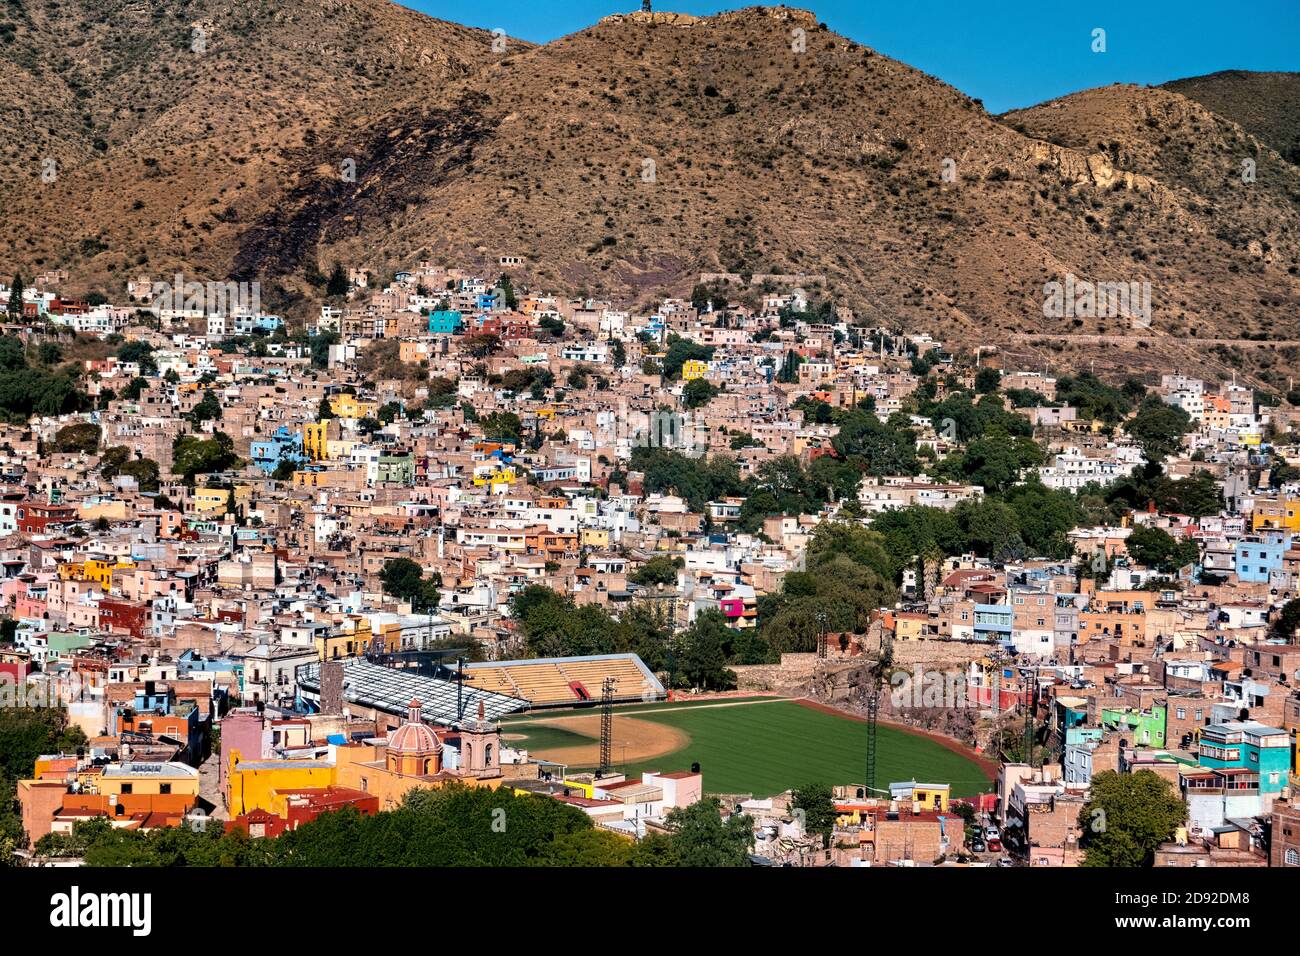 Vista sobre la Ciudad de Guanajuato y el estadio de béisbol, estado de Guanajuato, México Foto de stock